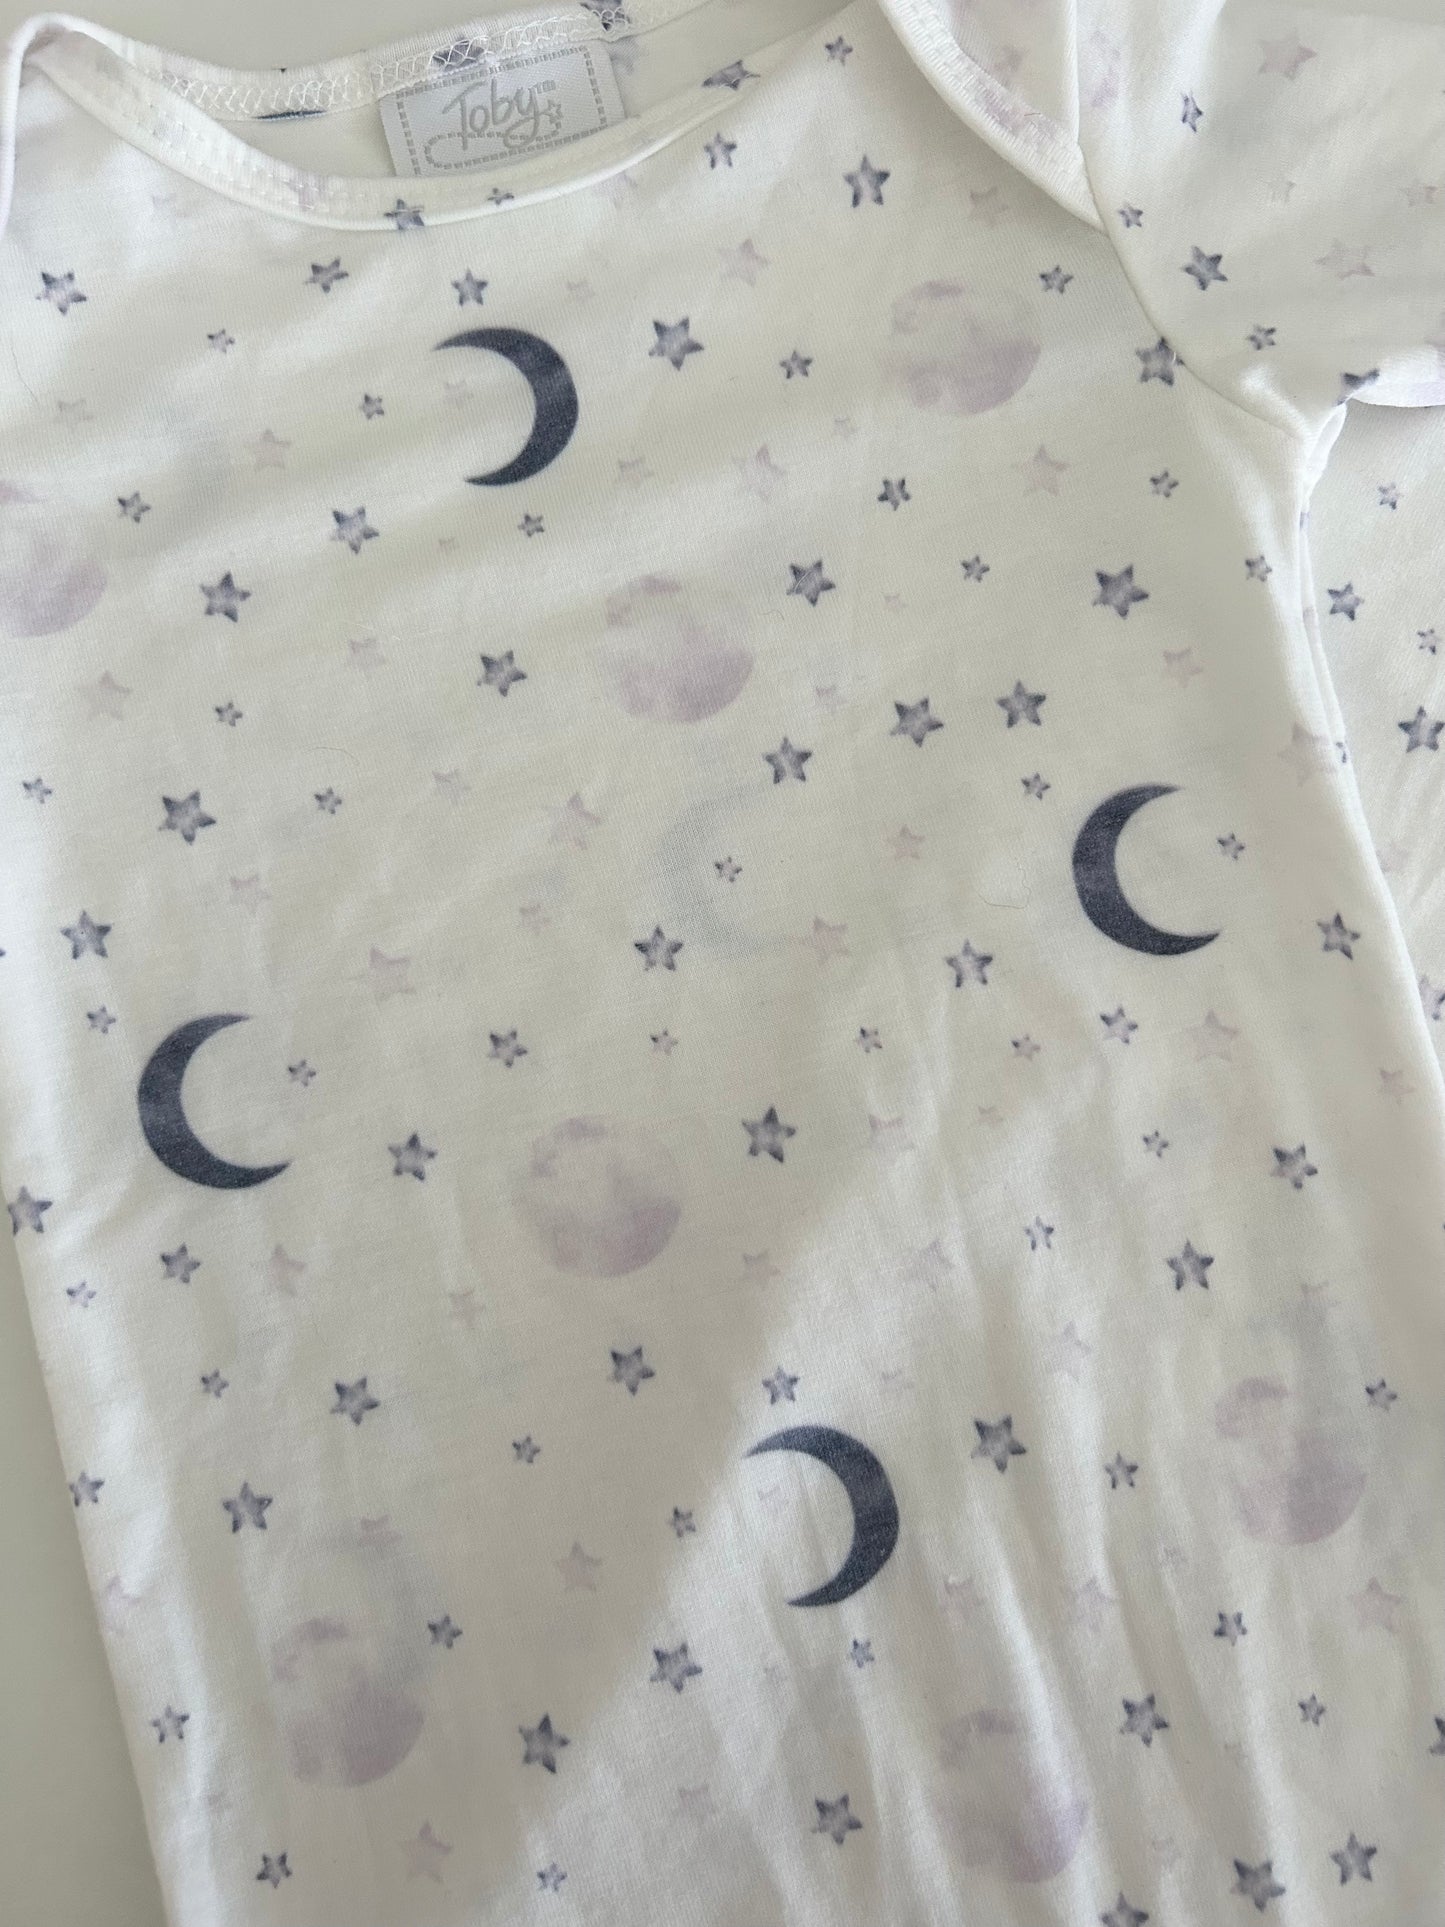 Toby's | Sleeper Tie Gown | Girls | White & Purple/Blue | Newborn